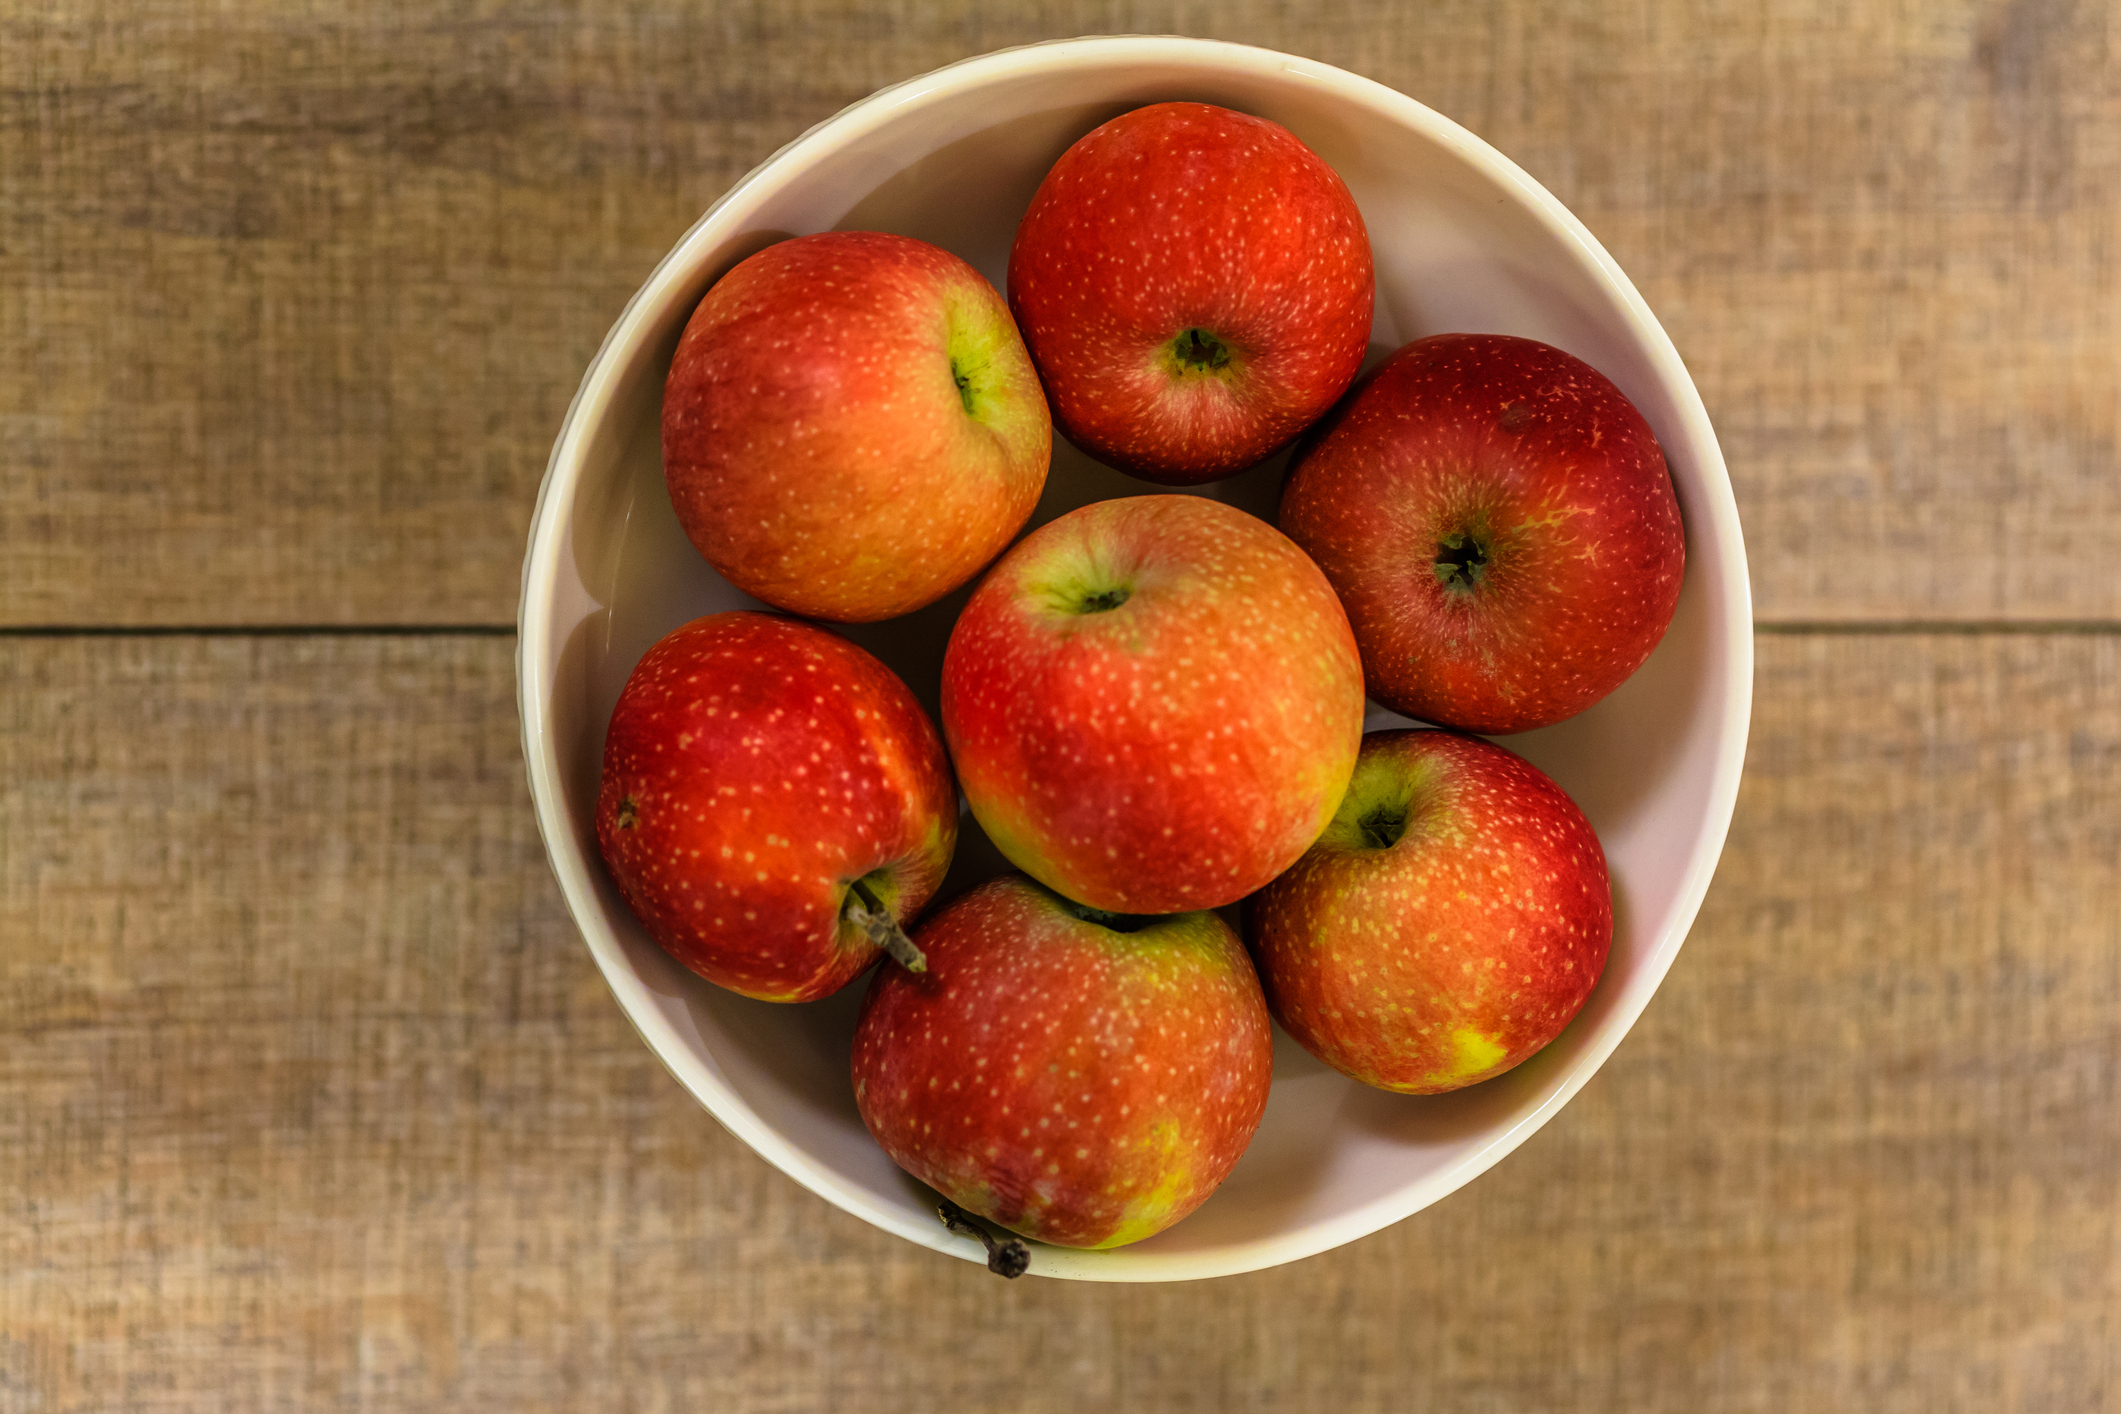 Какие витамины содержатся в яблоках